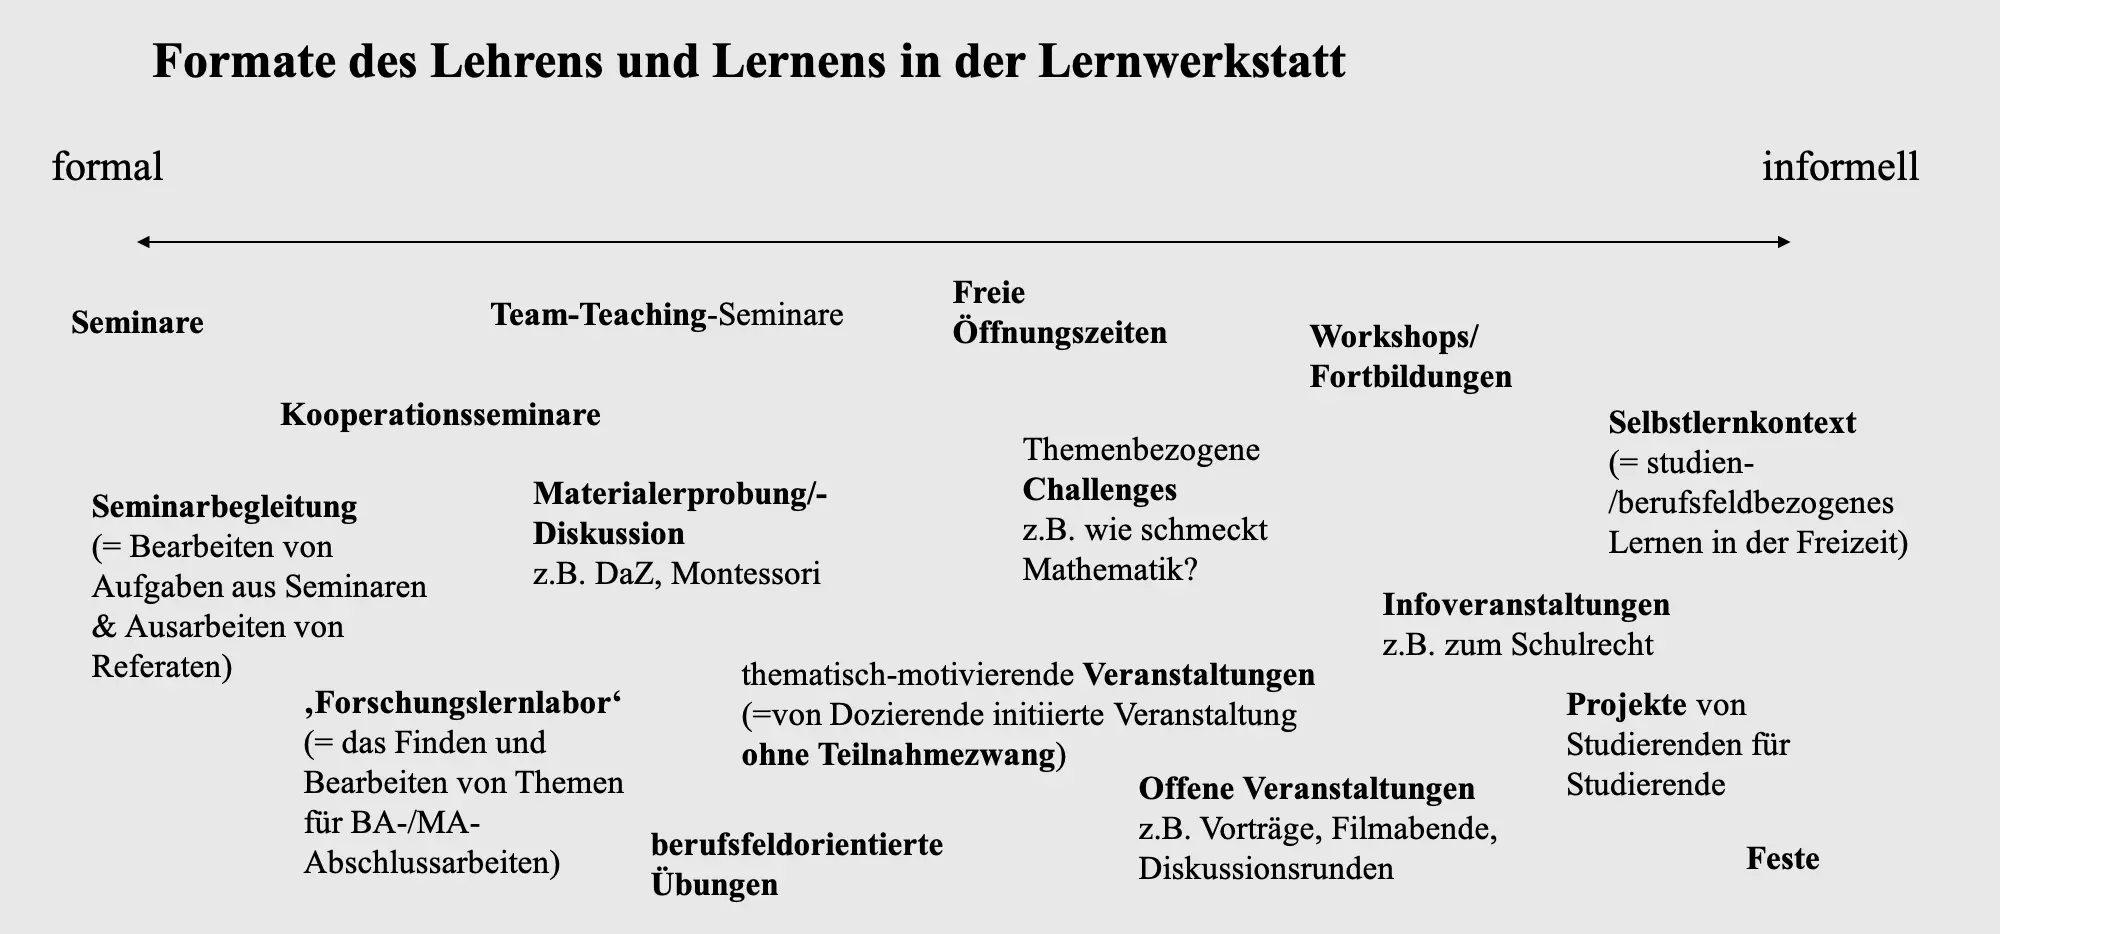 Formate des Lehrens und Lernens in der Lernwerkstatt (verschiedene Lehr- und Lernformat-Begriffe zwischen formalem und informellem Lernen angeordnet)